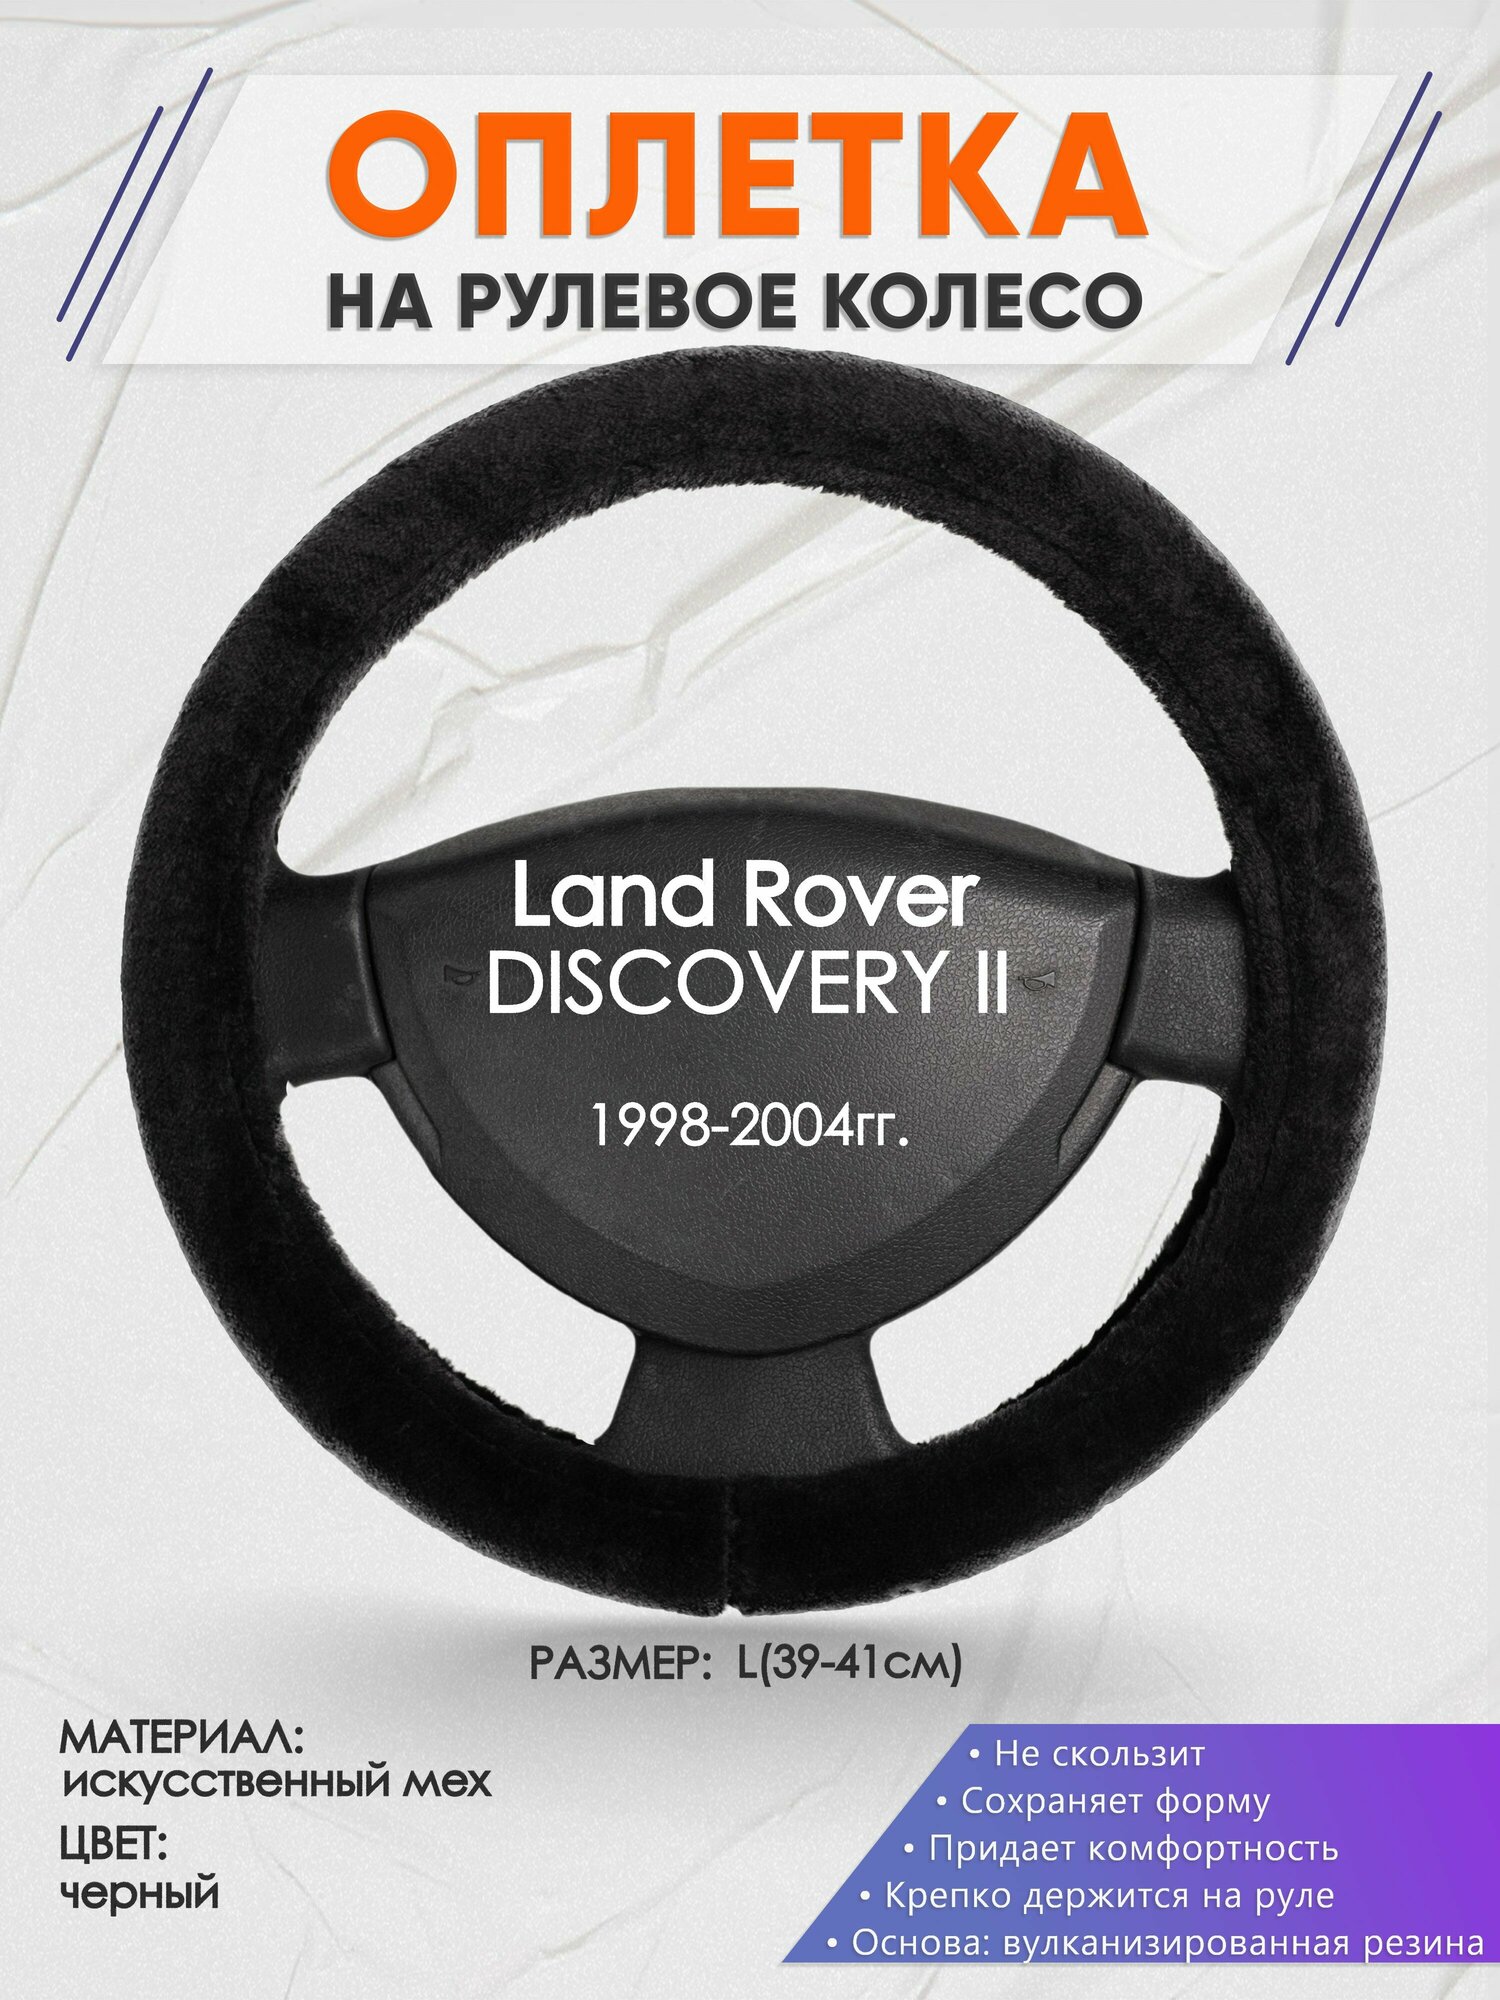 Оплетка на руль для Land Rover DISCOVERY 2(Ленд Ровер Дисковери) 1998-2004, L(39-41см), Искусственный мех 45